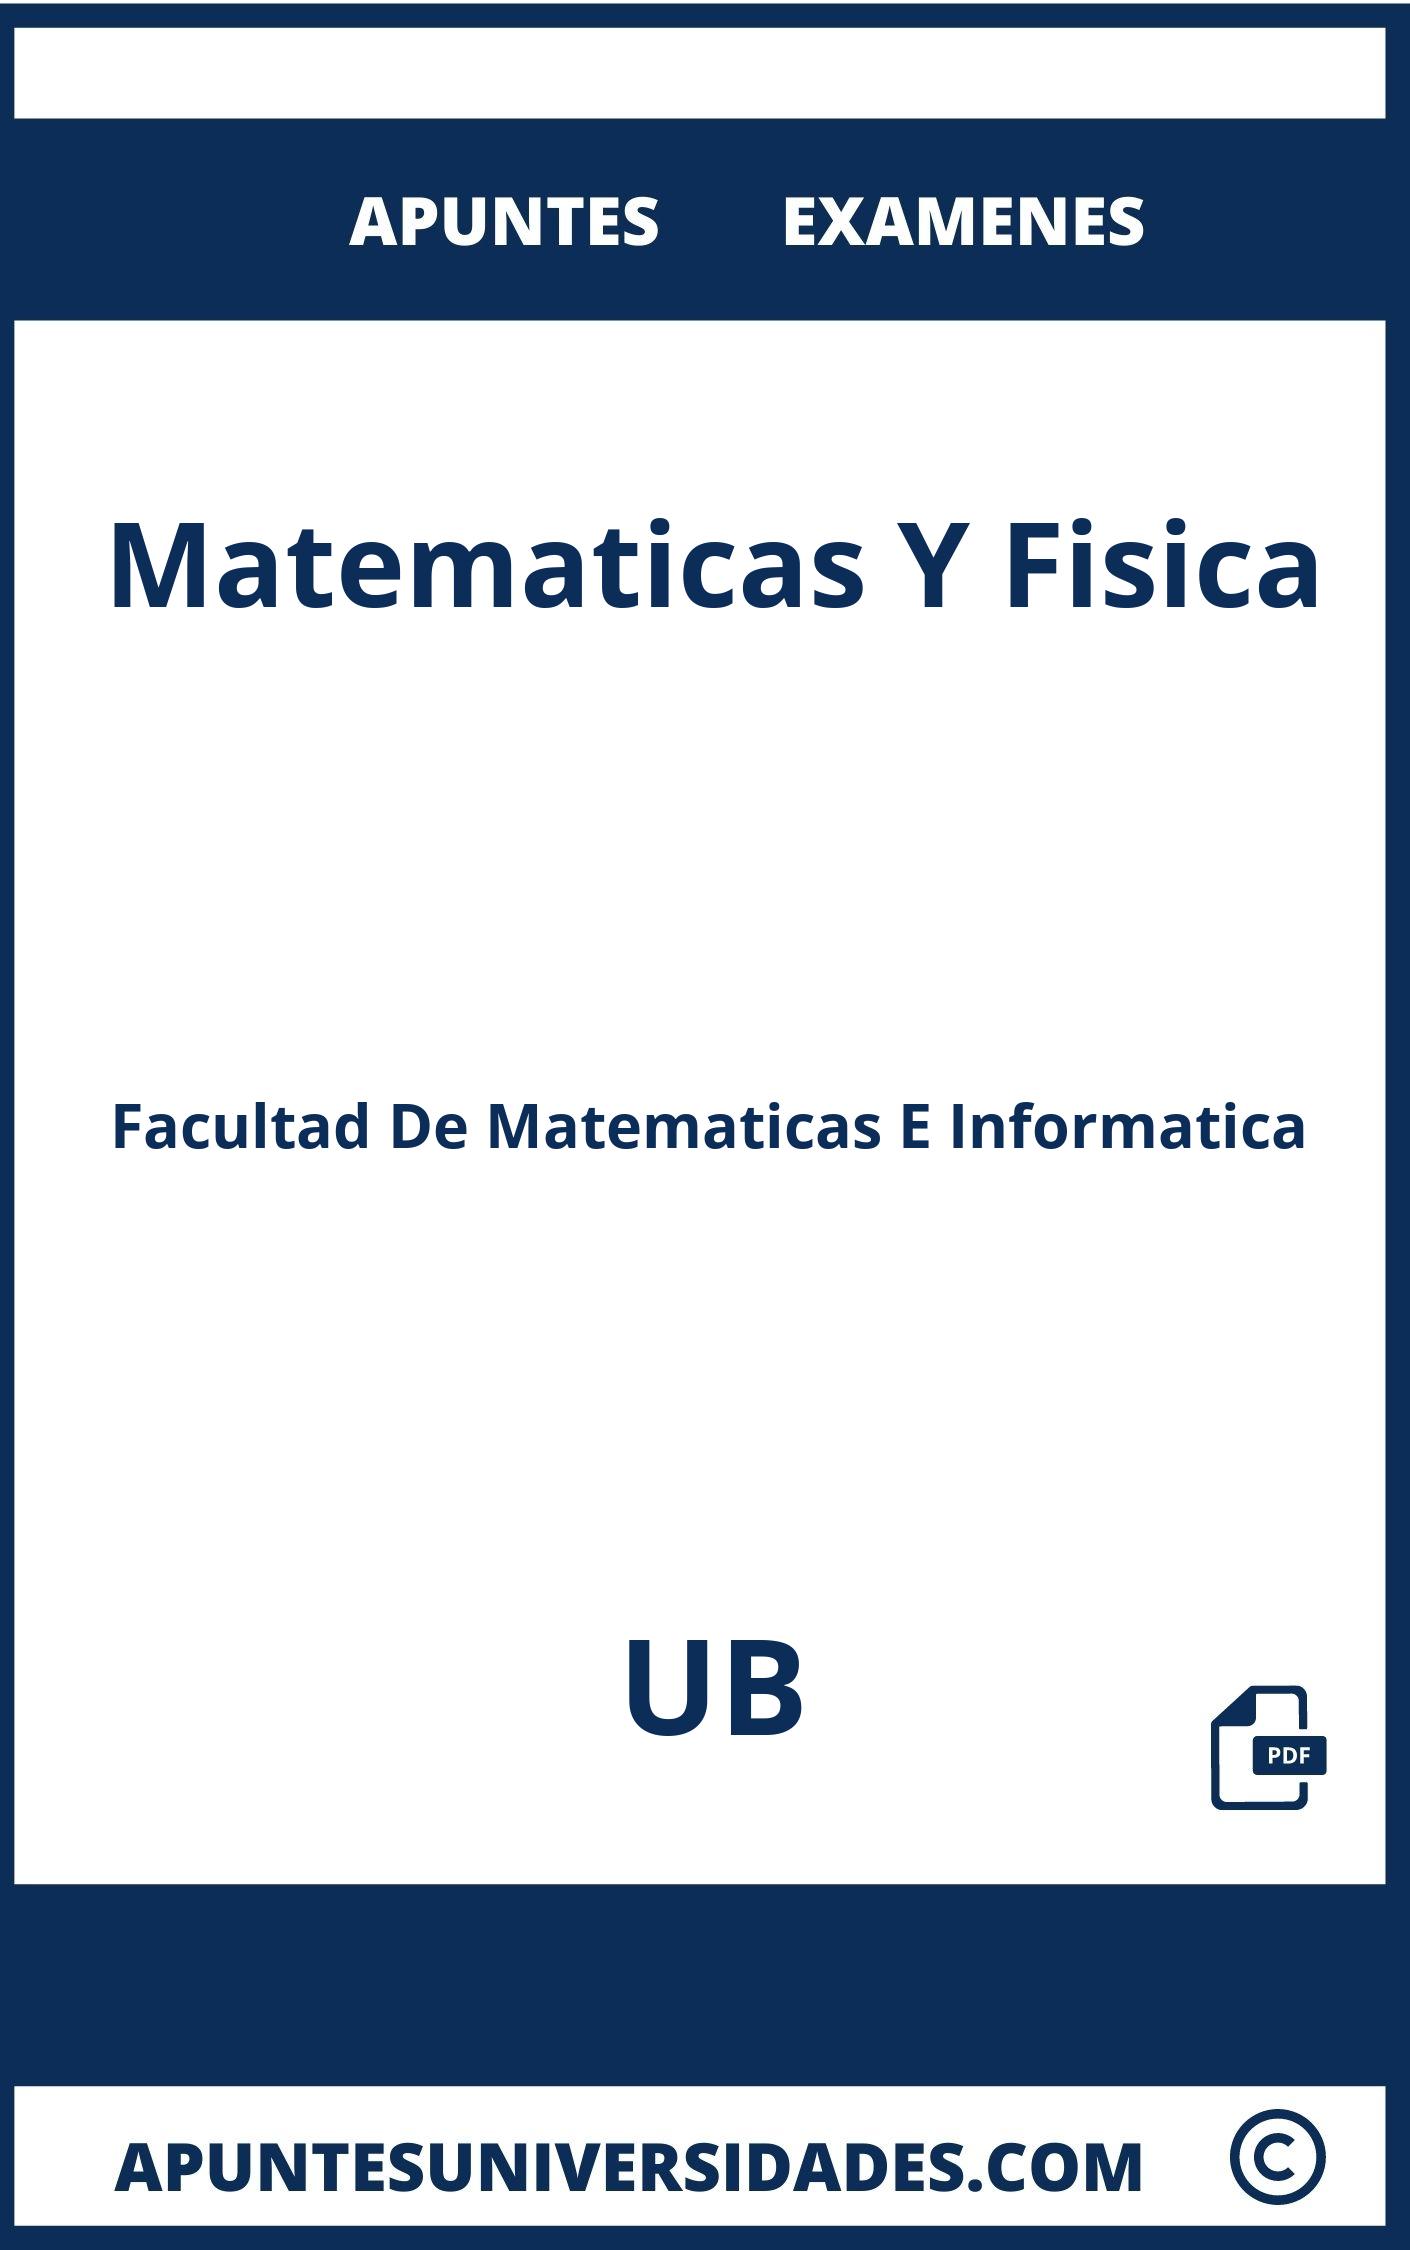 Apuntes Matematicas Y Fisica UB y Examenes